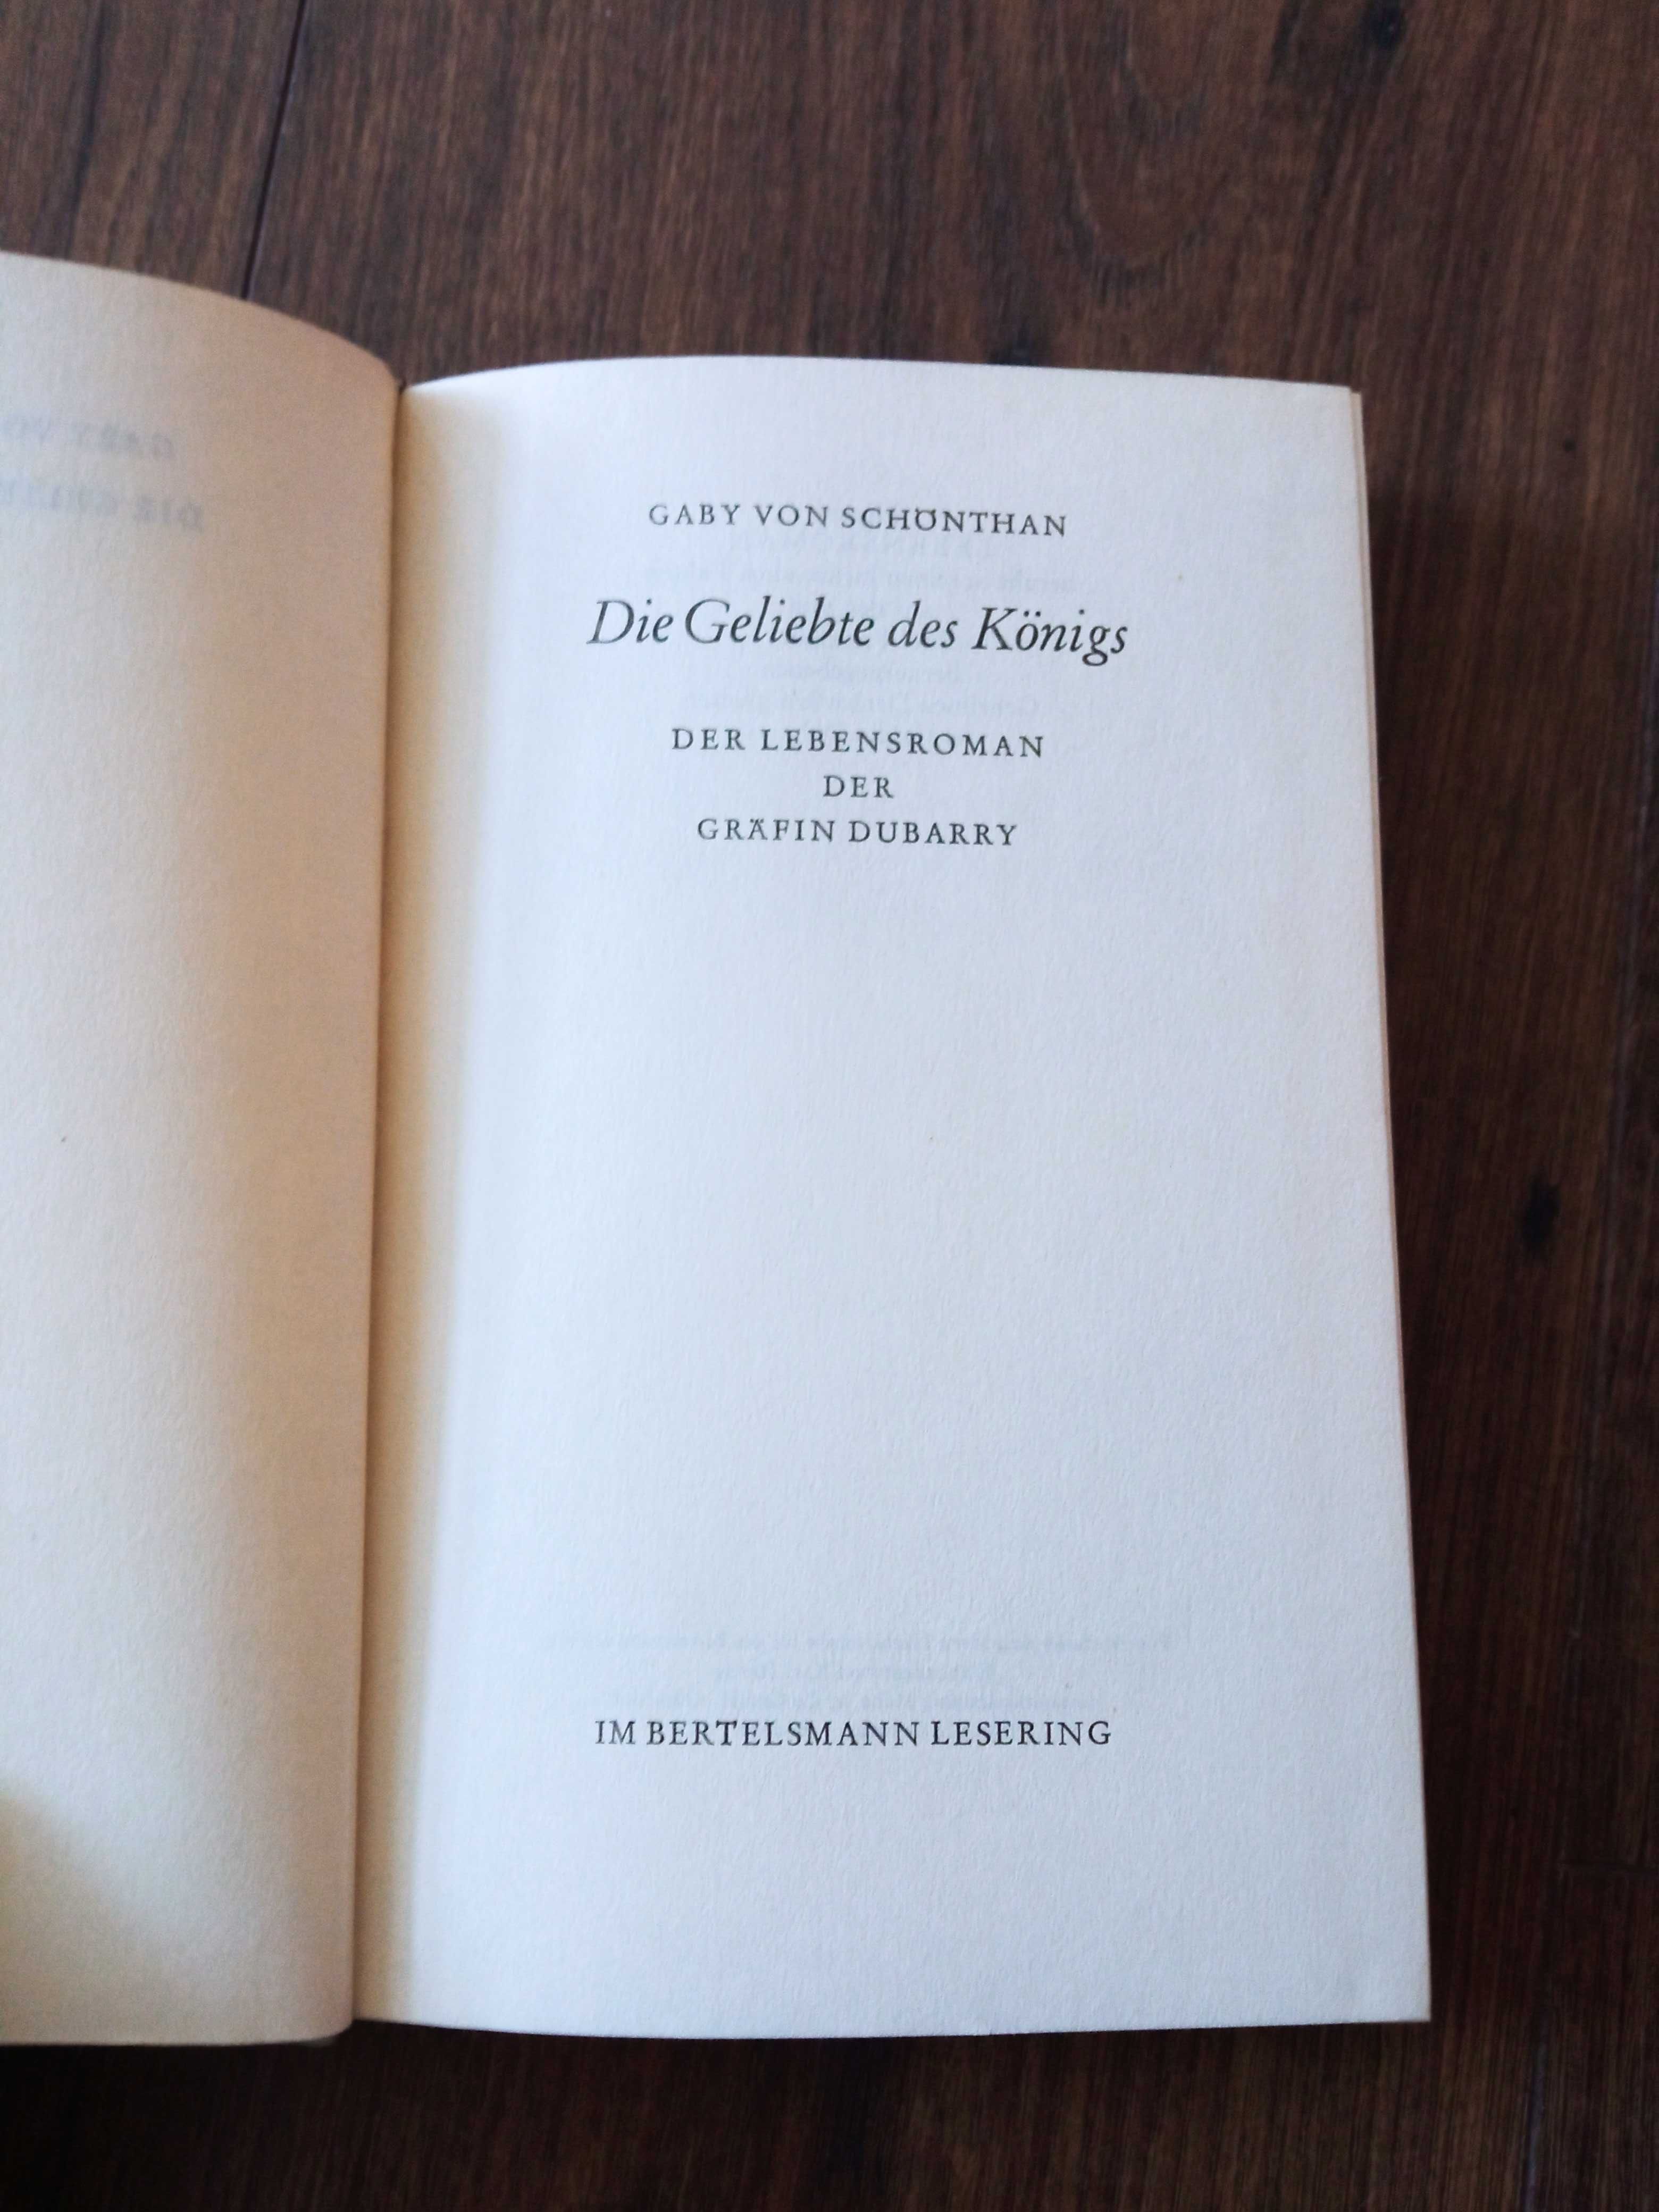 Die gelibte des königs gaby von schönthan książka po niemiecku